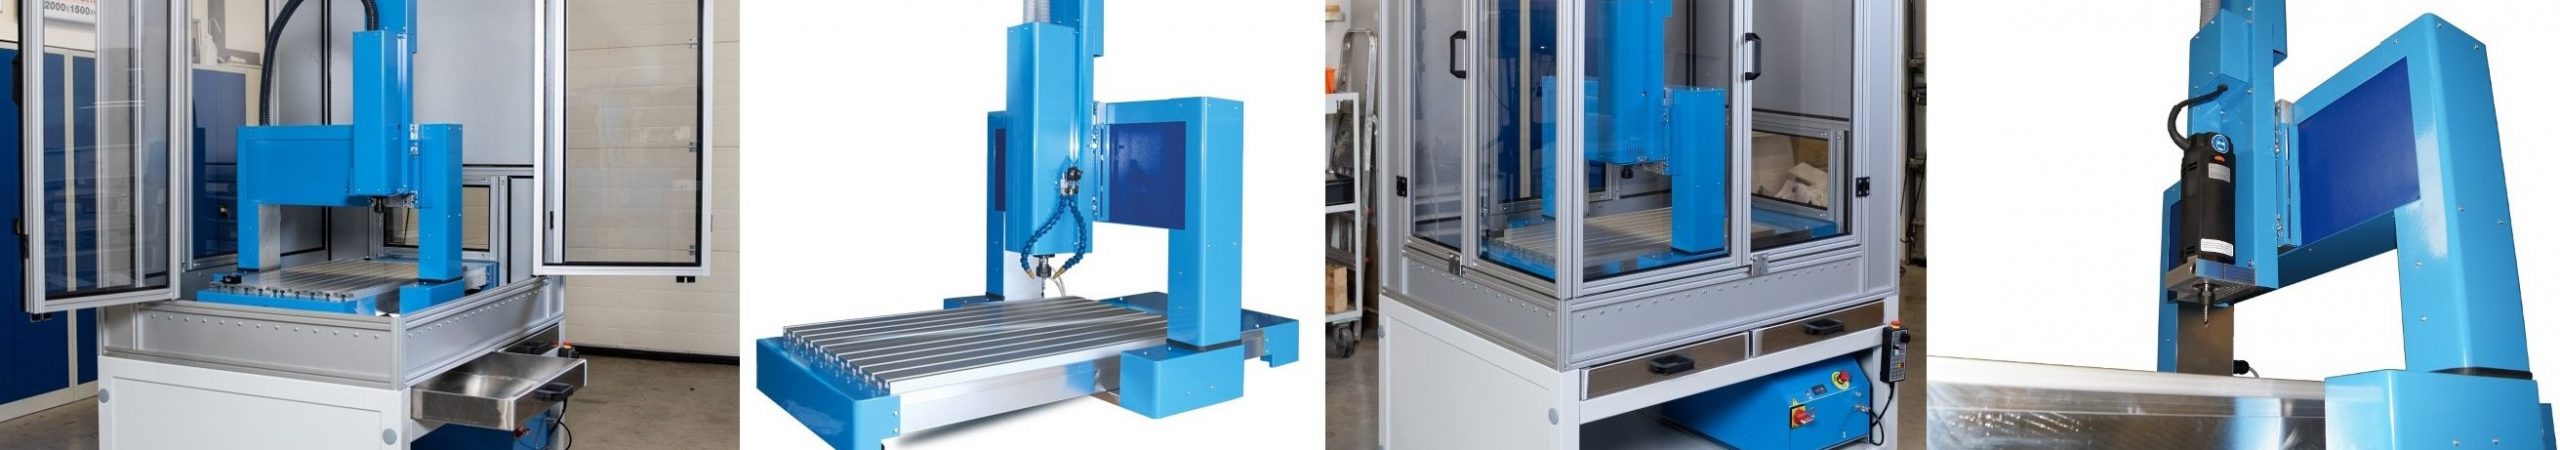 CNC Fräsmaschinen und Portalfräsen der PA-Serie V3 in verschiedenen Ausstattungen von MillStep